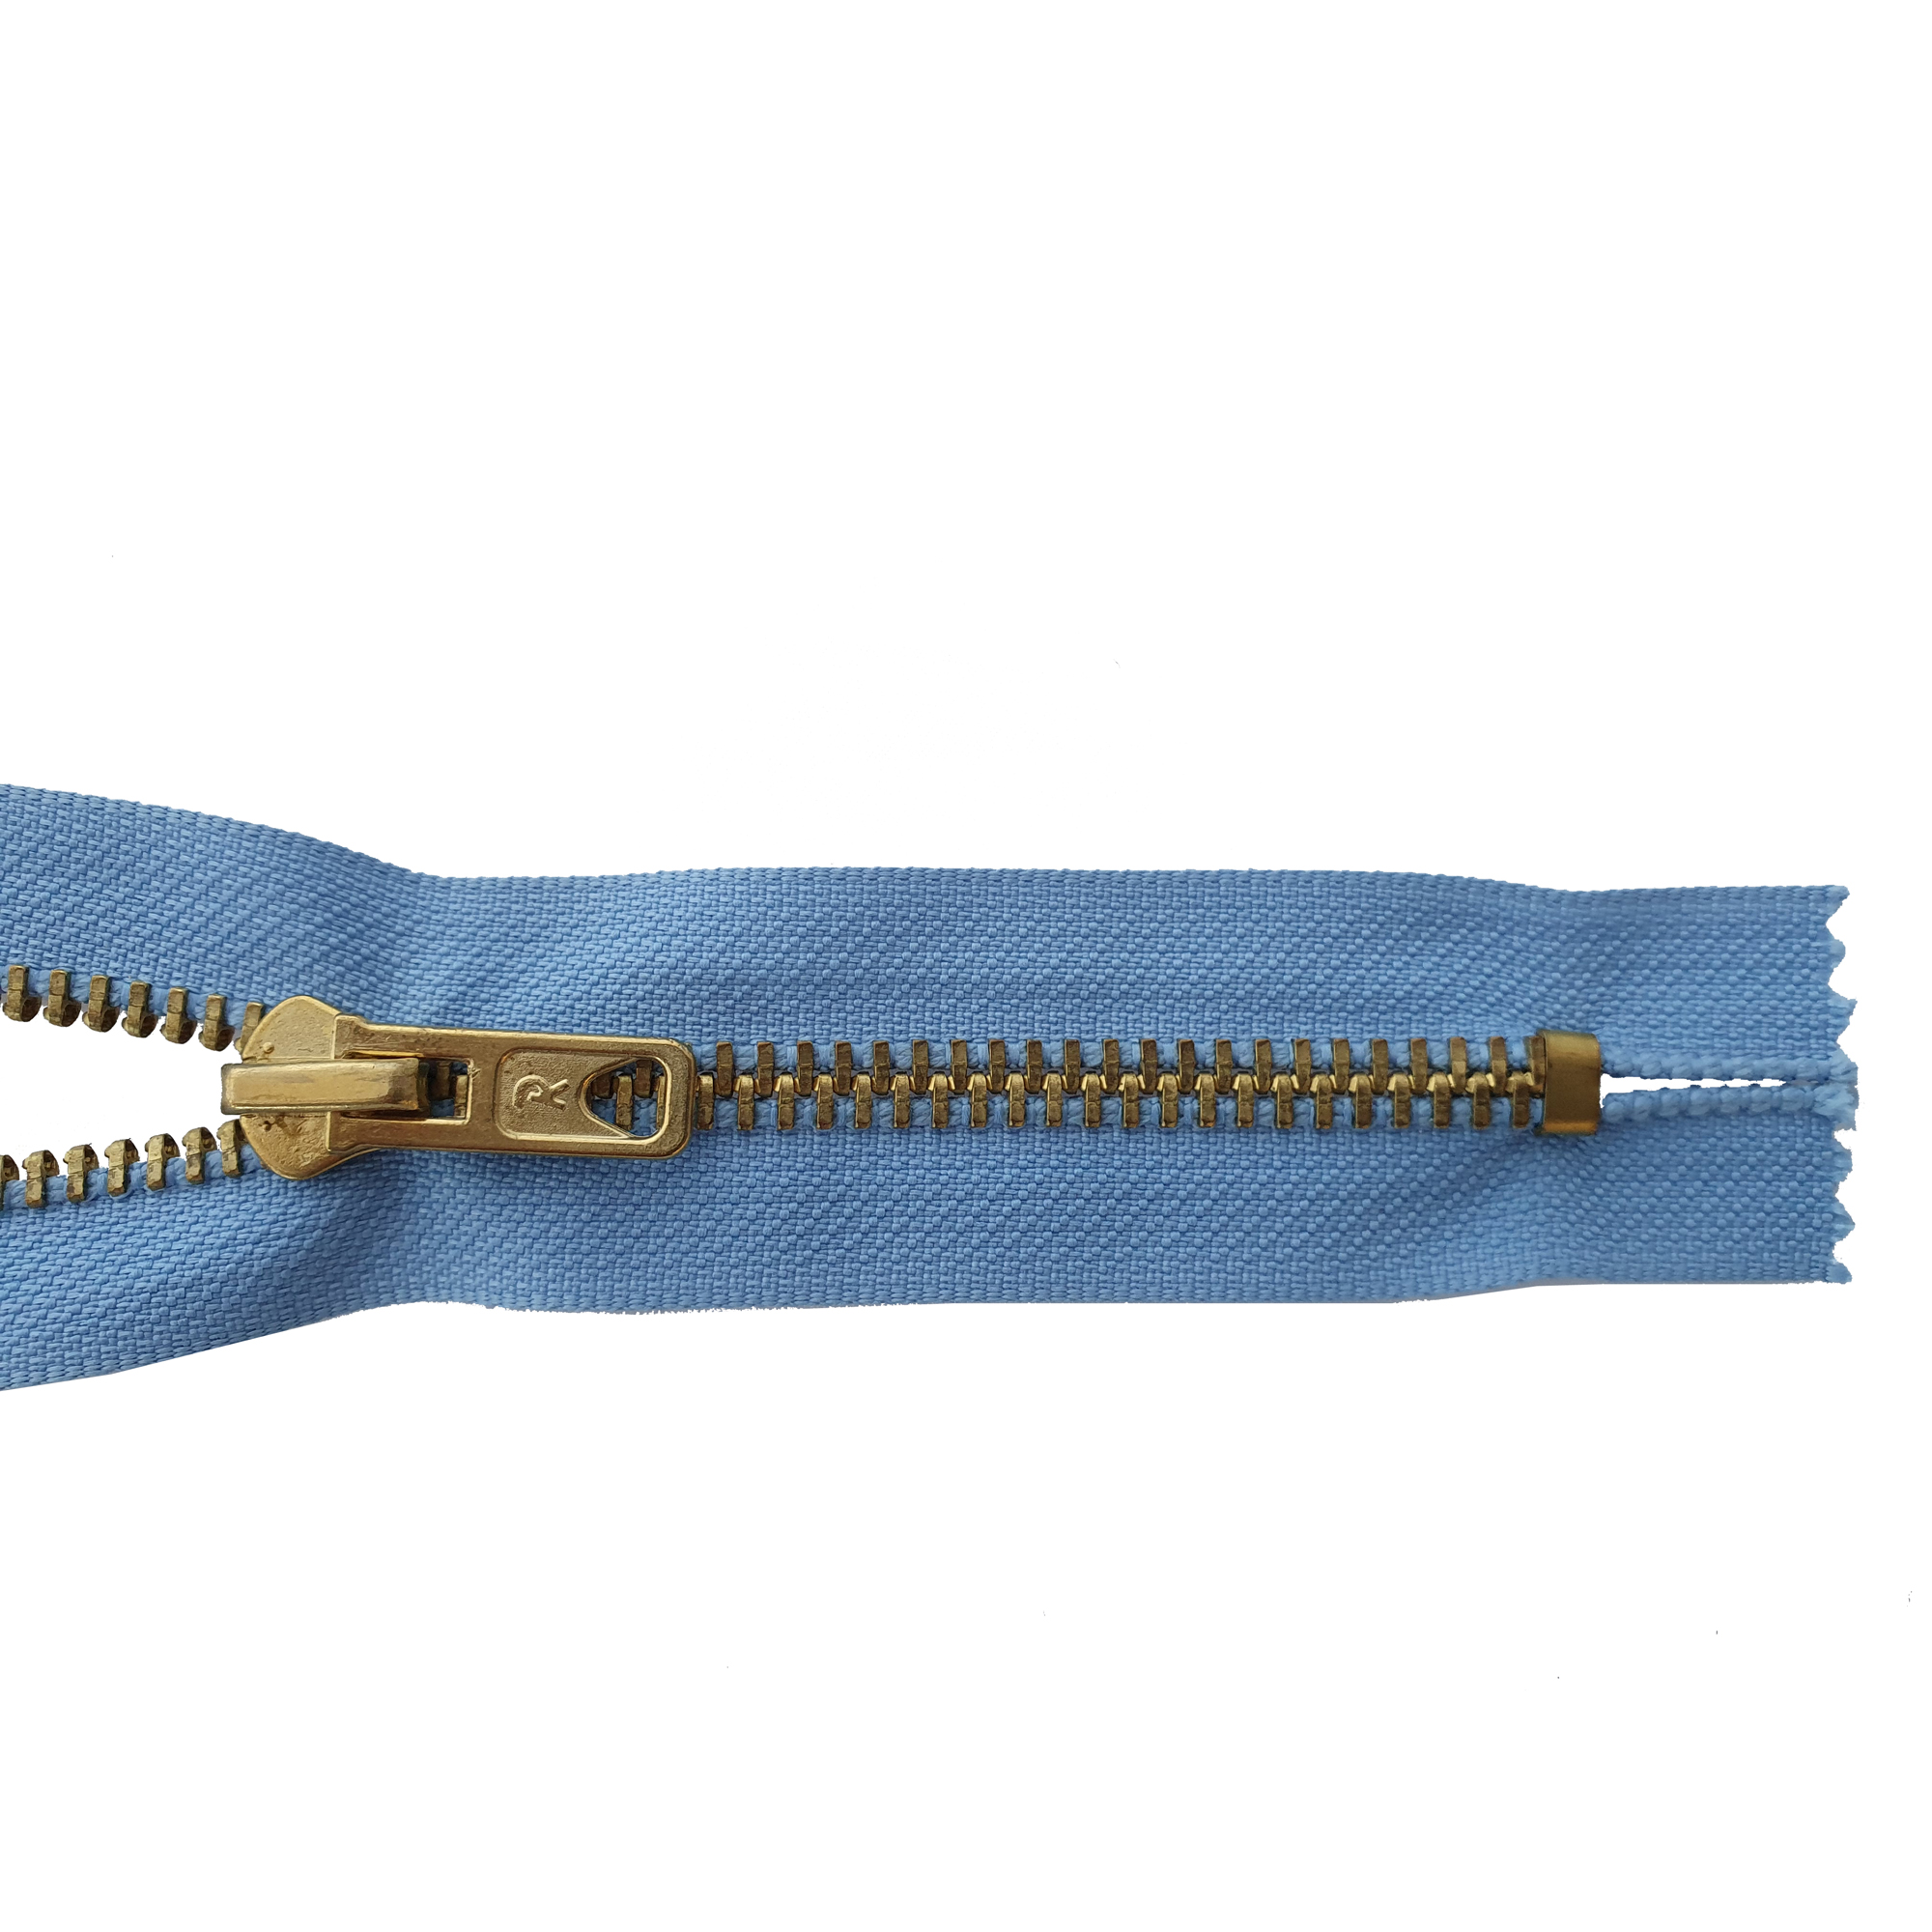 Reißverschluss 20cm, nicht teilbar, Metall goldf. schmal, h.grau-blau, hochwertiger Marken-Reißverschluss von Rubi/Barcelona